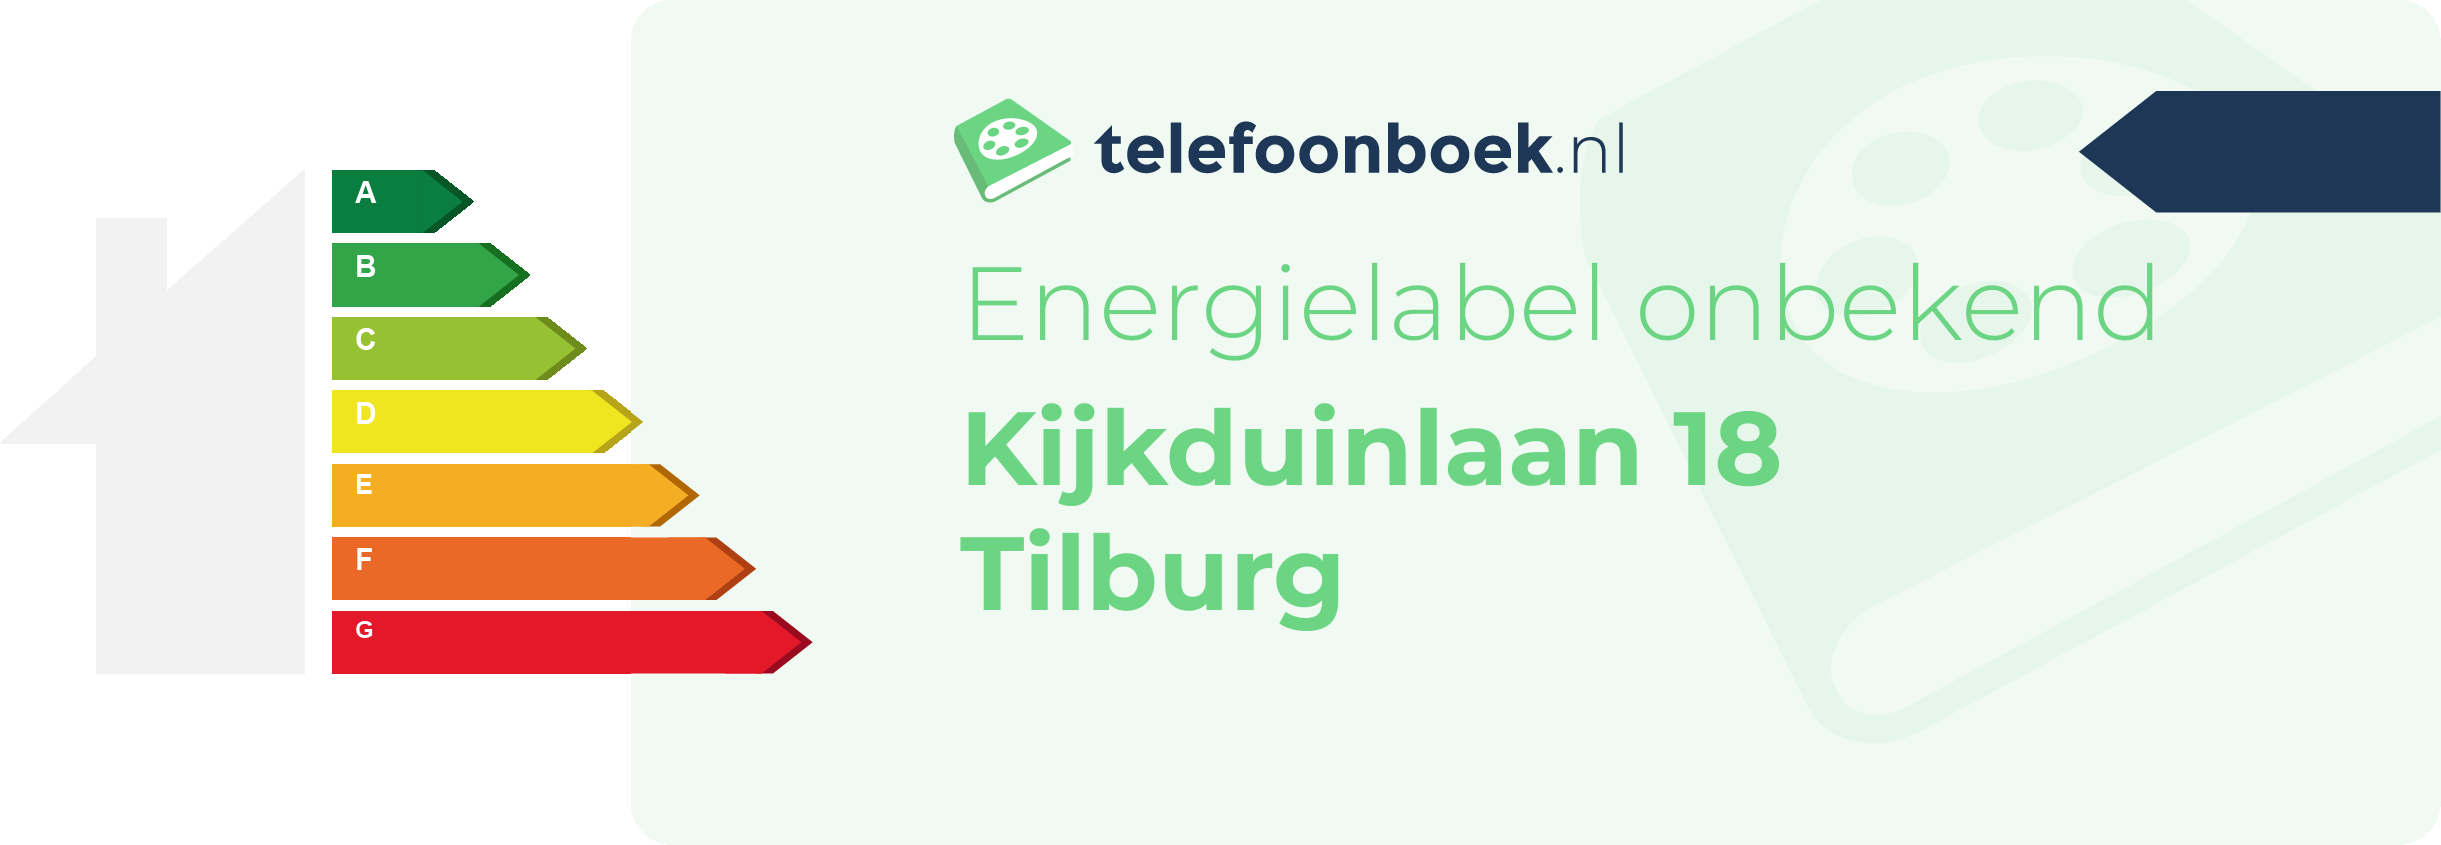 Energielabel Kijkduinlaan 18 Tilburg